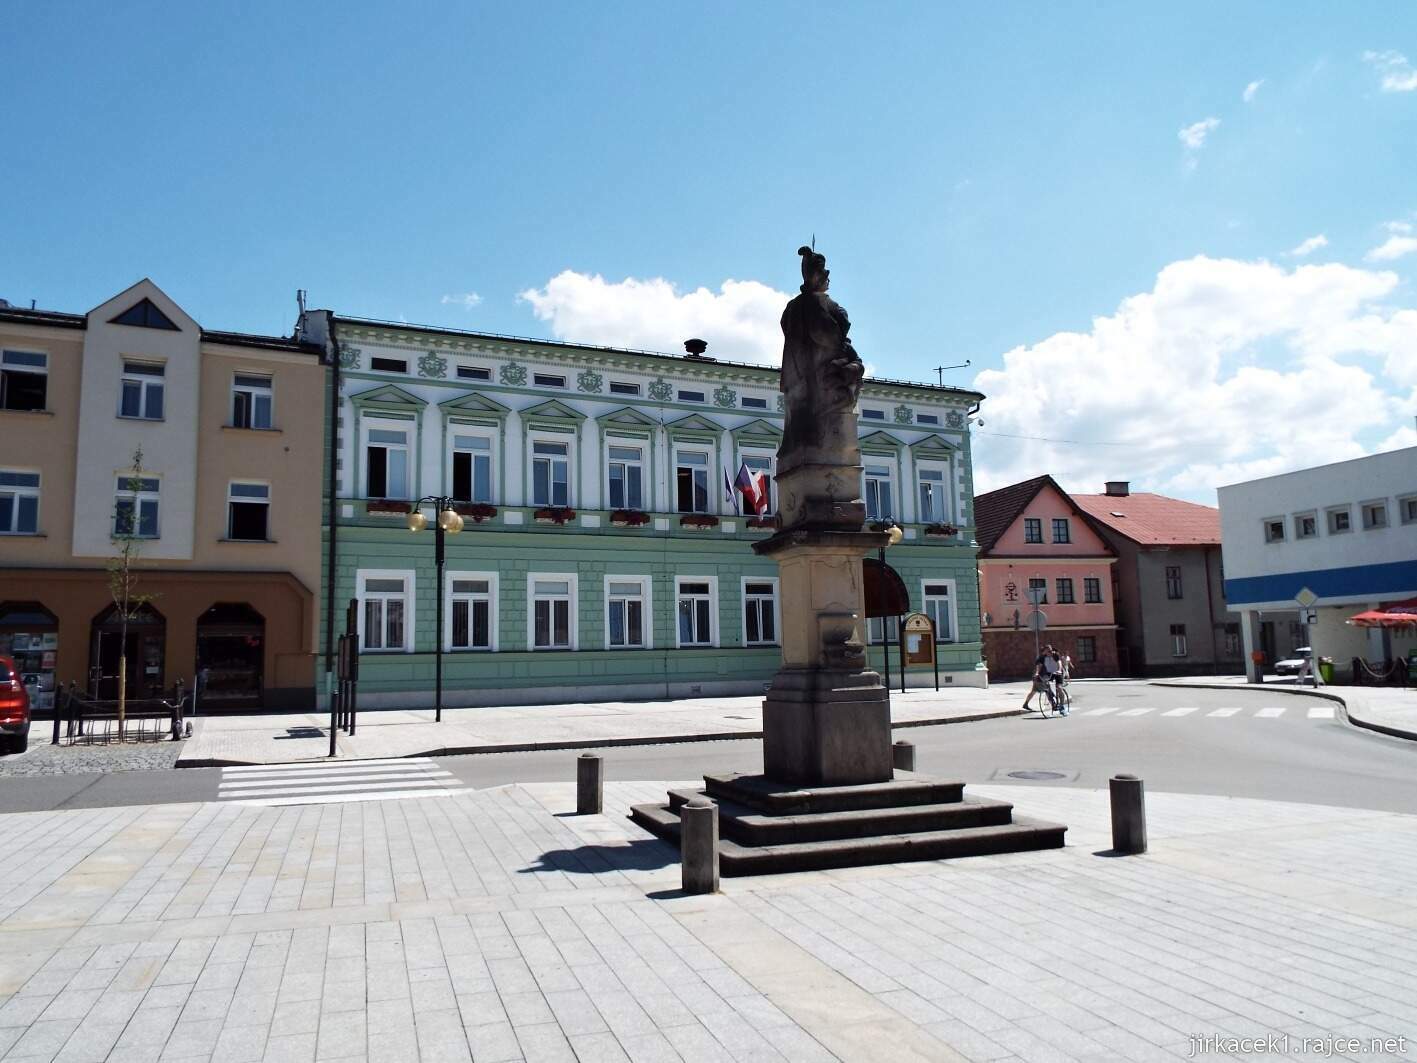 004 - Rožnov pod Radhoštěm - Masarykovo náměstí 21 - socha svatého Floriána a Městský úřad